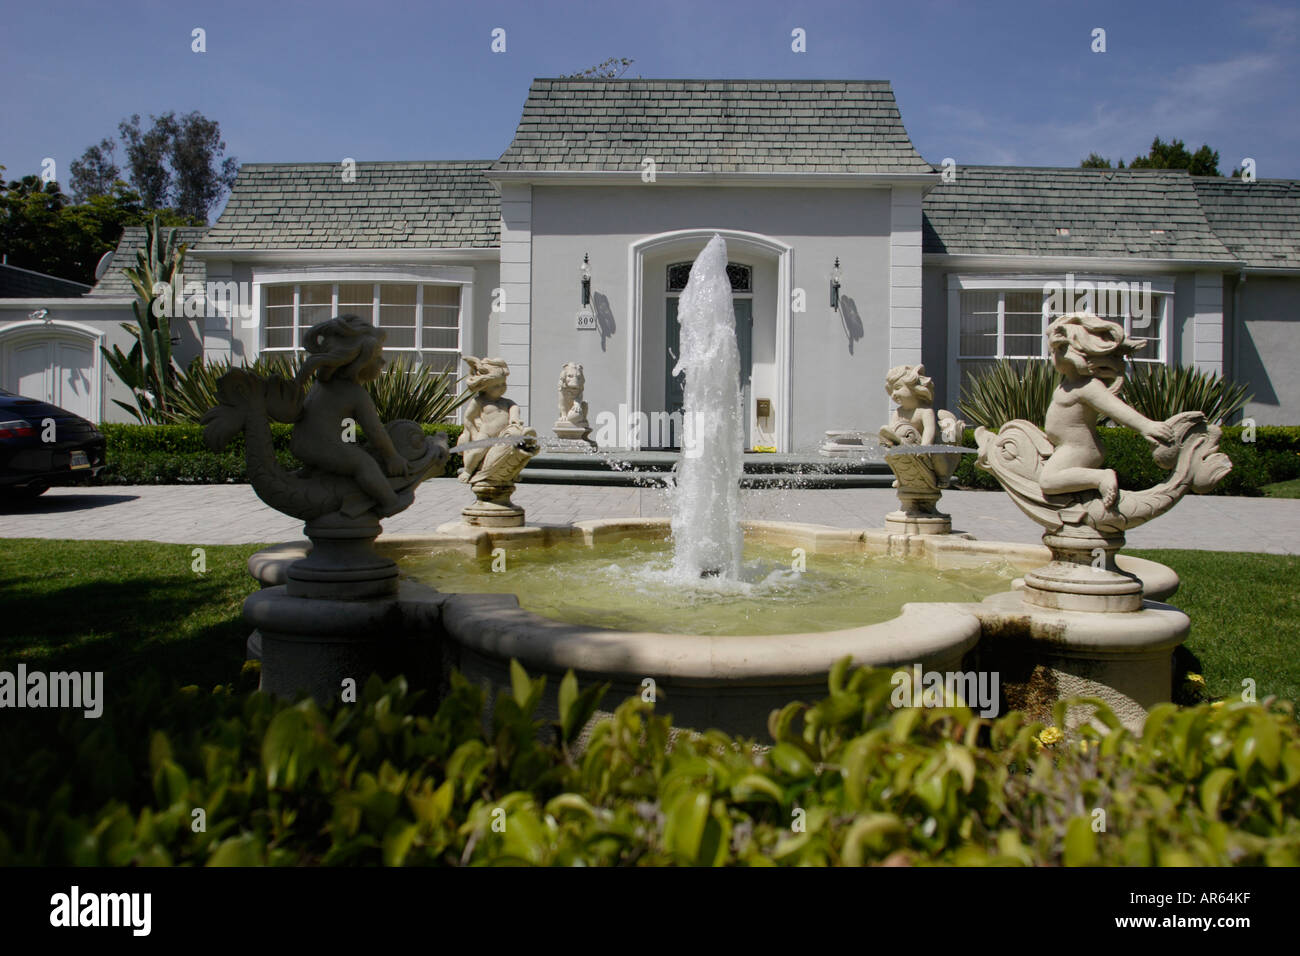 Villa Villa Einfamilienhaus Beverly Hills Los Angeles L A Caifornia Vereinigte Staaten Von Amerika Vereinigte Staaten Von Amerika Stockfotografie Alamy